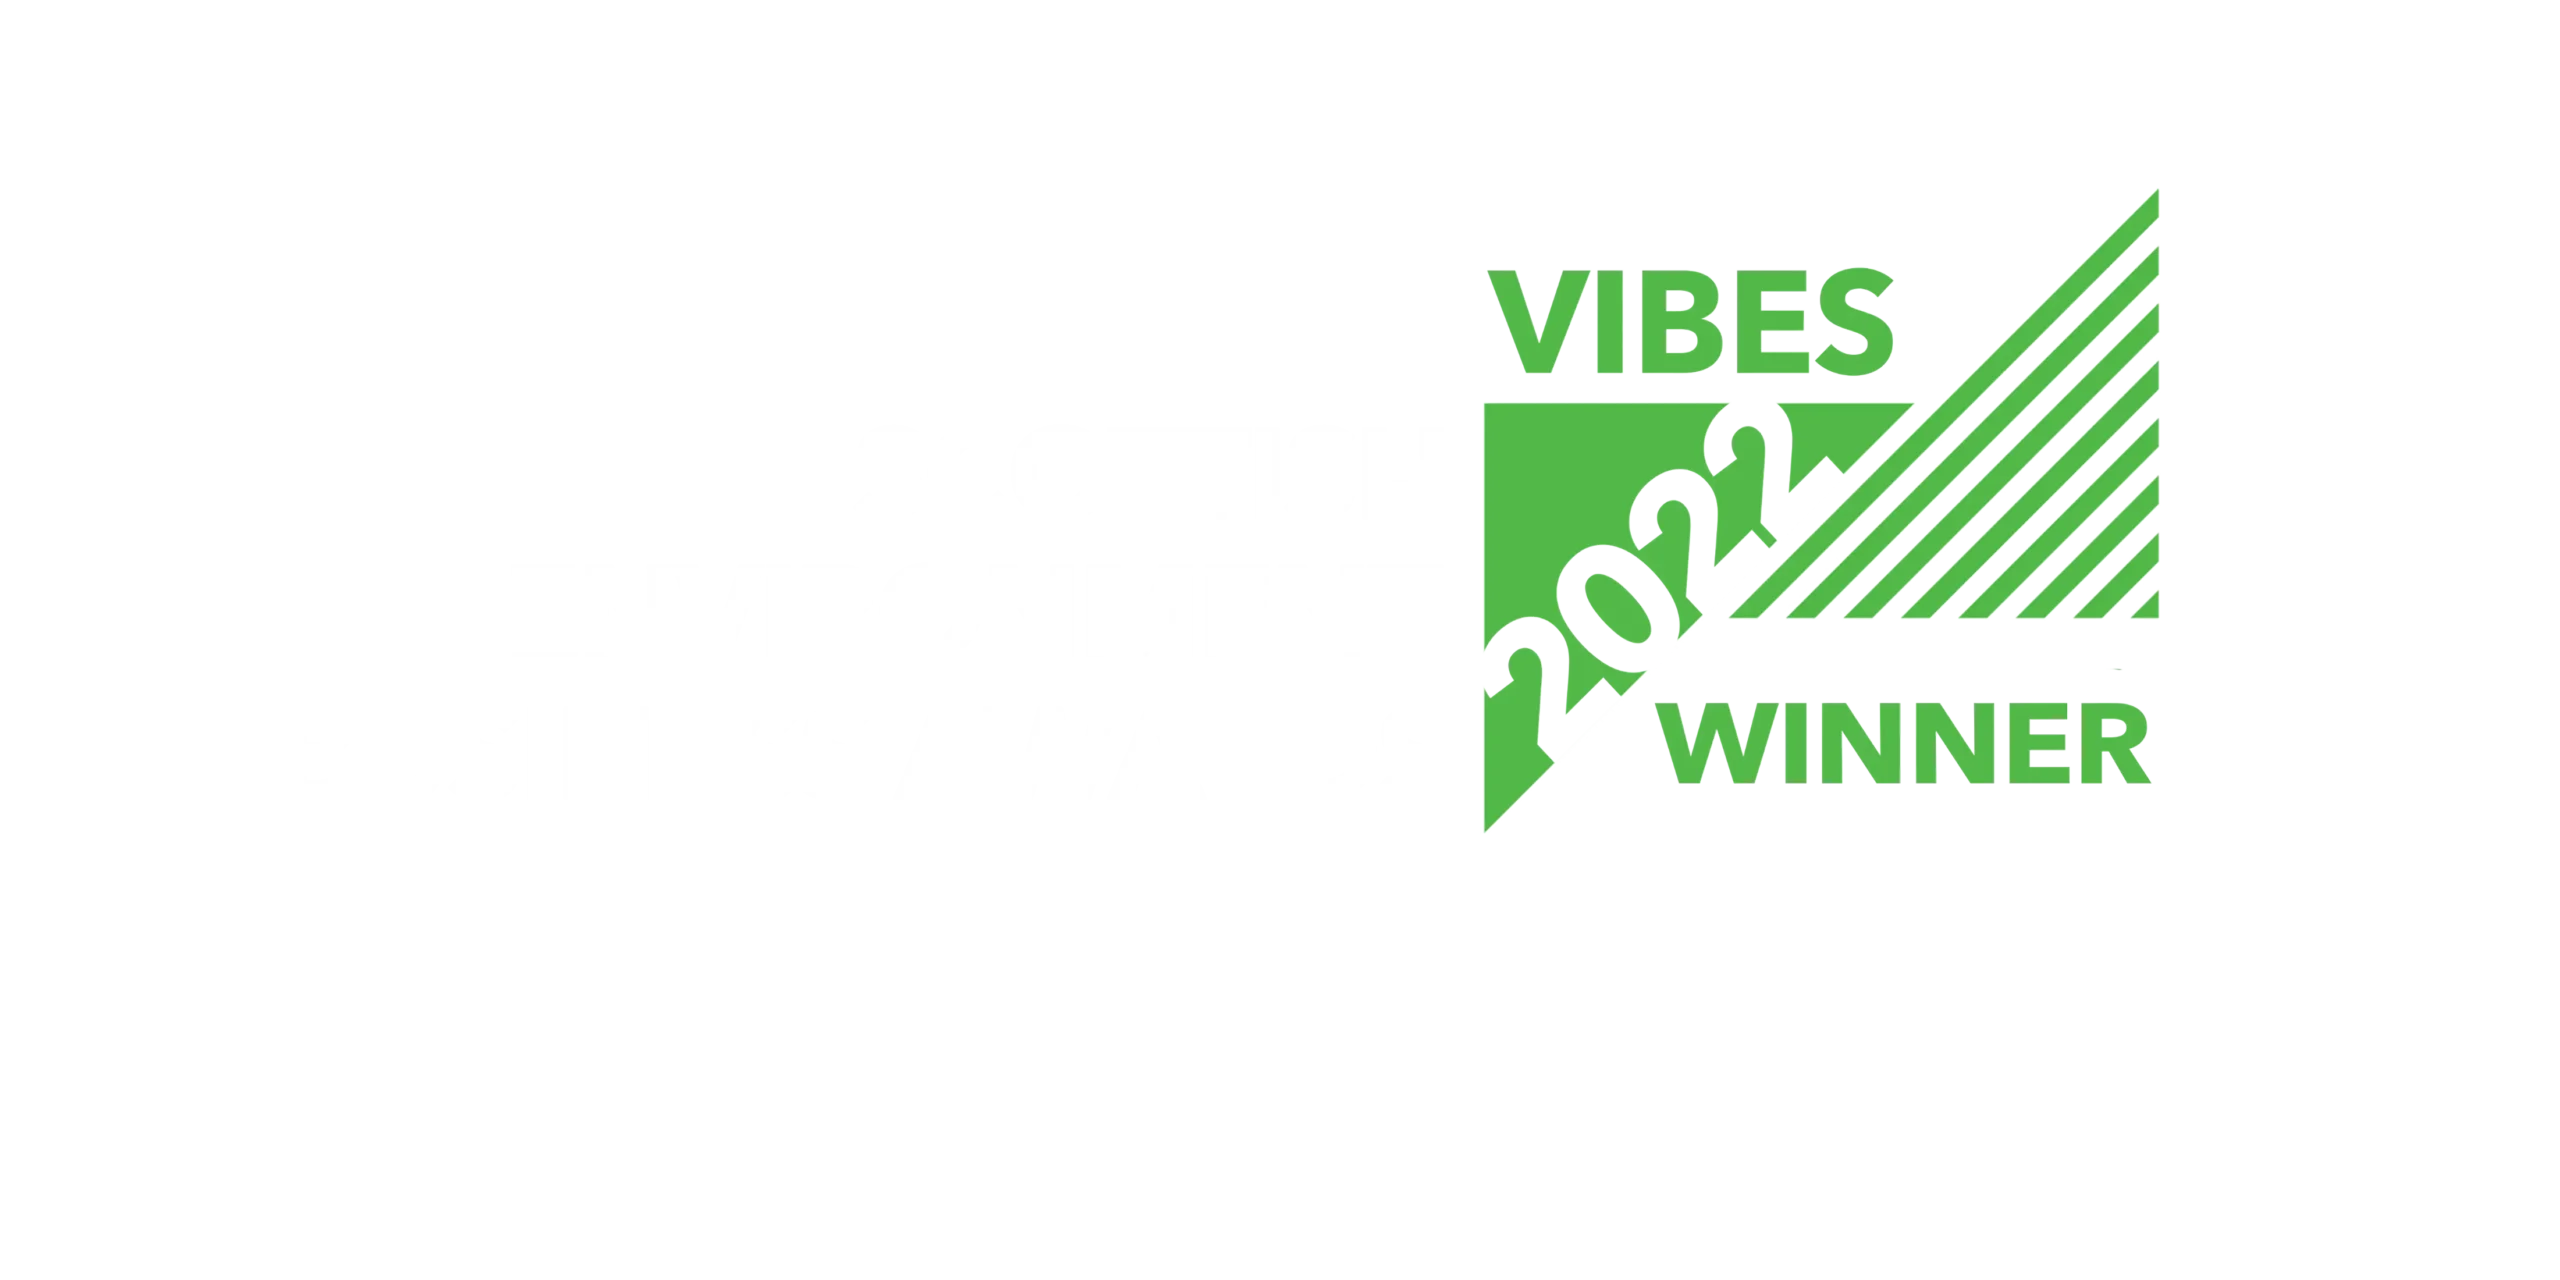 EGG Lighting VIBES small business award winner